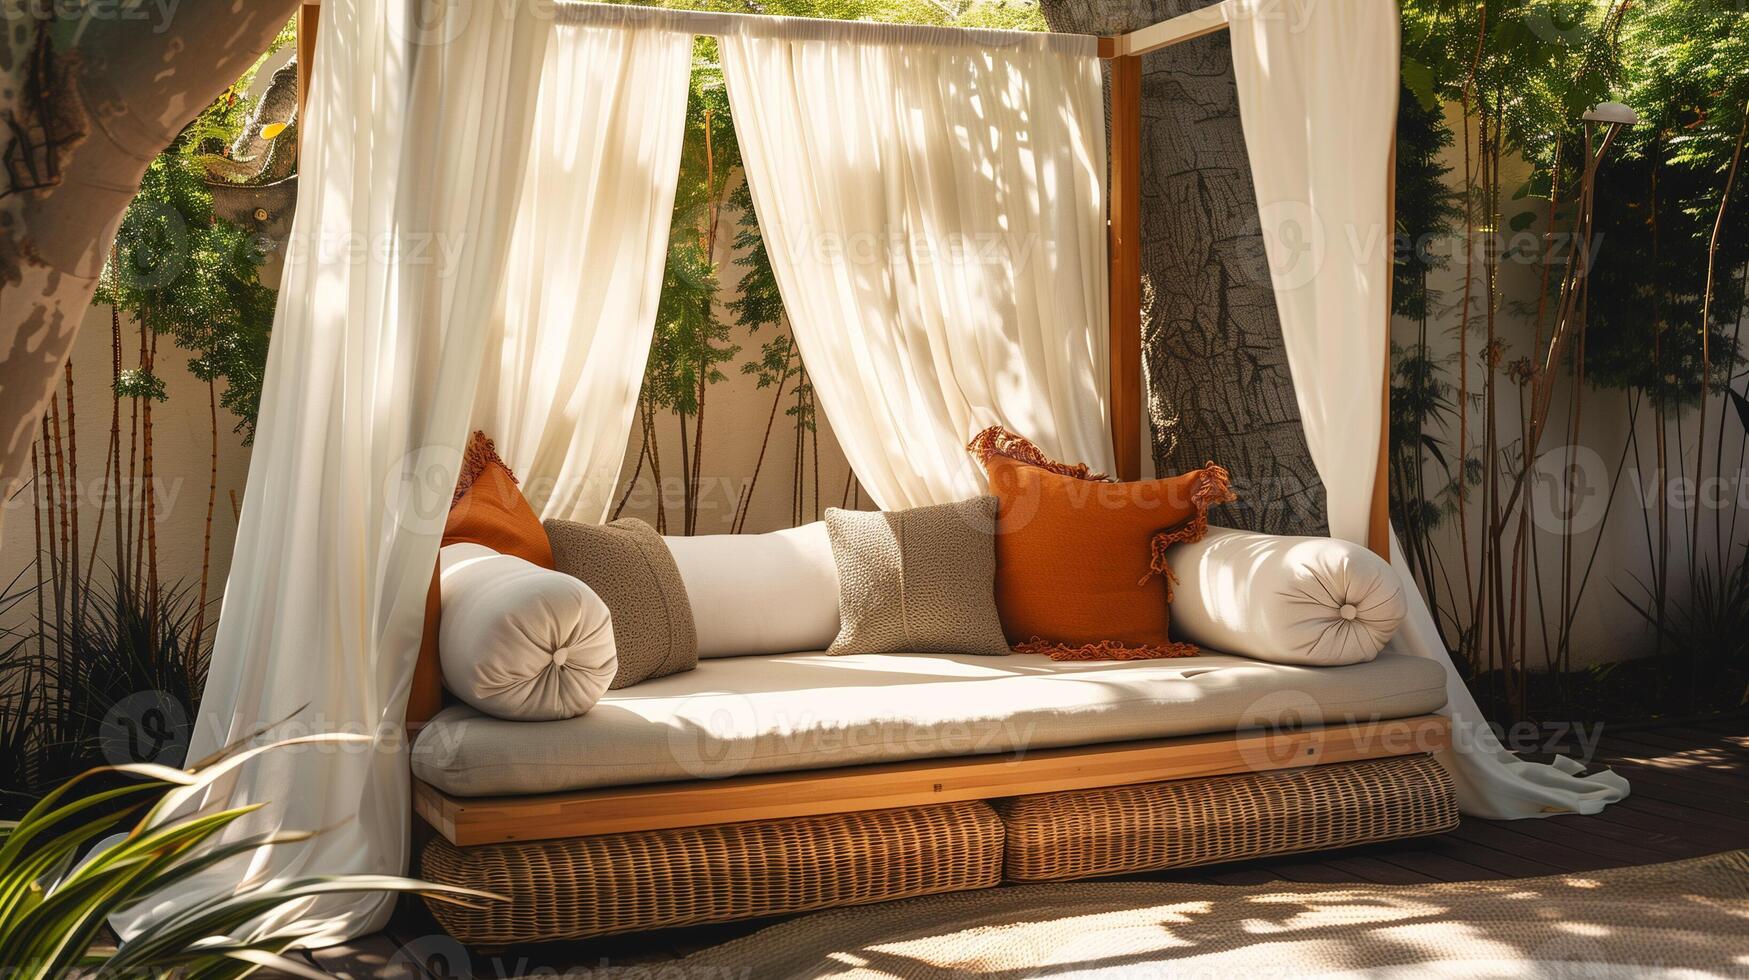 confortable Extérieur cabane avec peluche coussins niché dans une tranquille jardin, idéal pour été relaxation ou Accueil décor inspiration photo